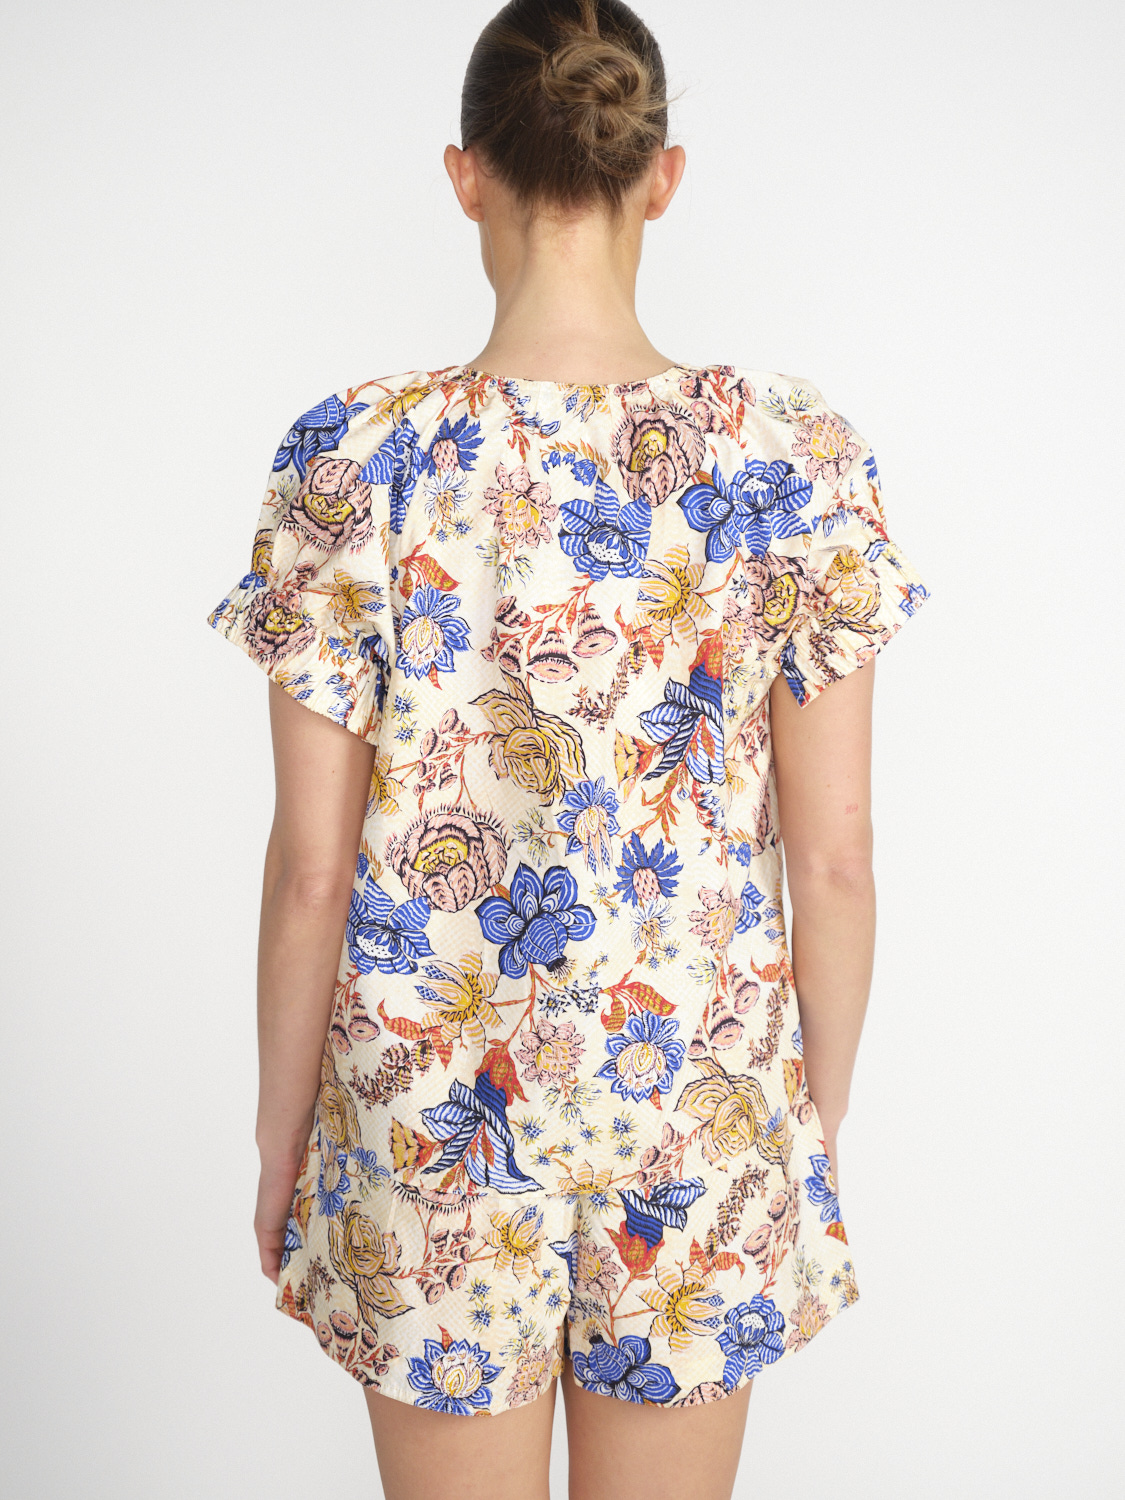 Ulla Johnson Naomi – Baumwoll-Bluse mit Blumen-Design   mehrfarbig 34